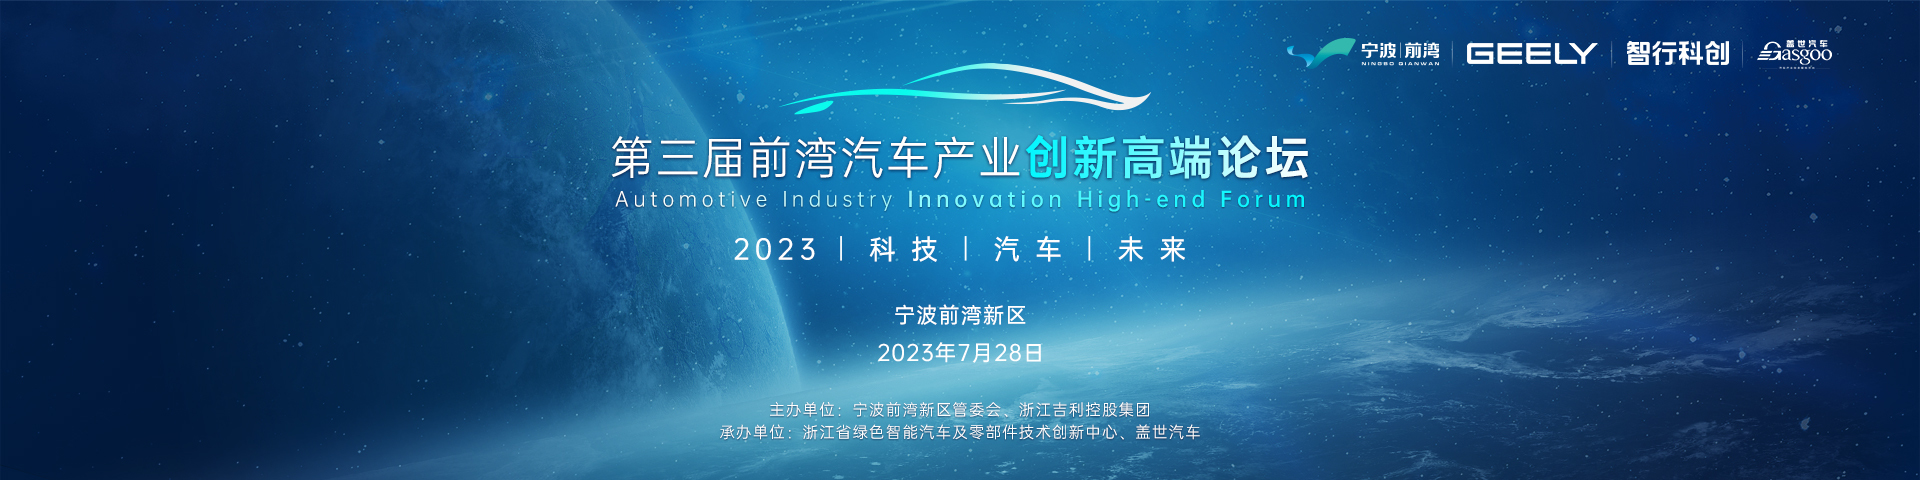 2023第三届前湾汽车产业创新高端论坛